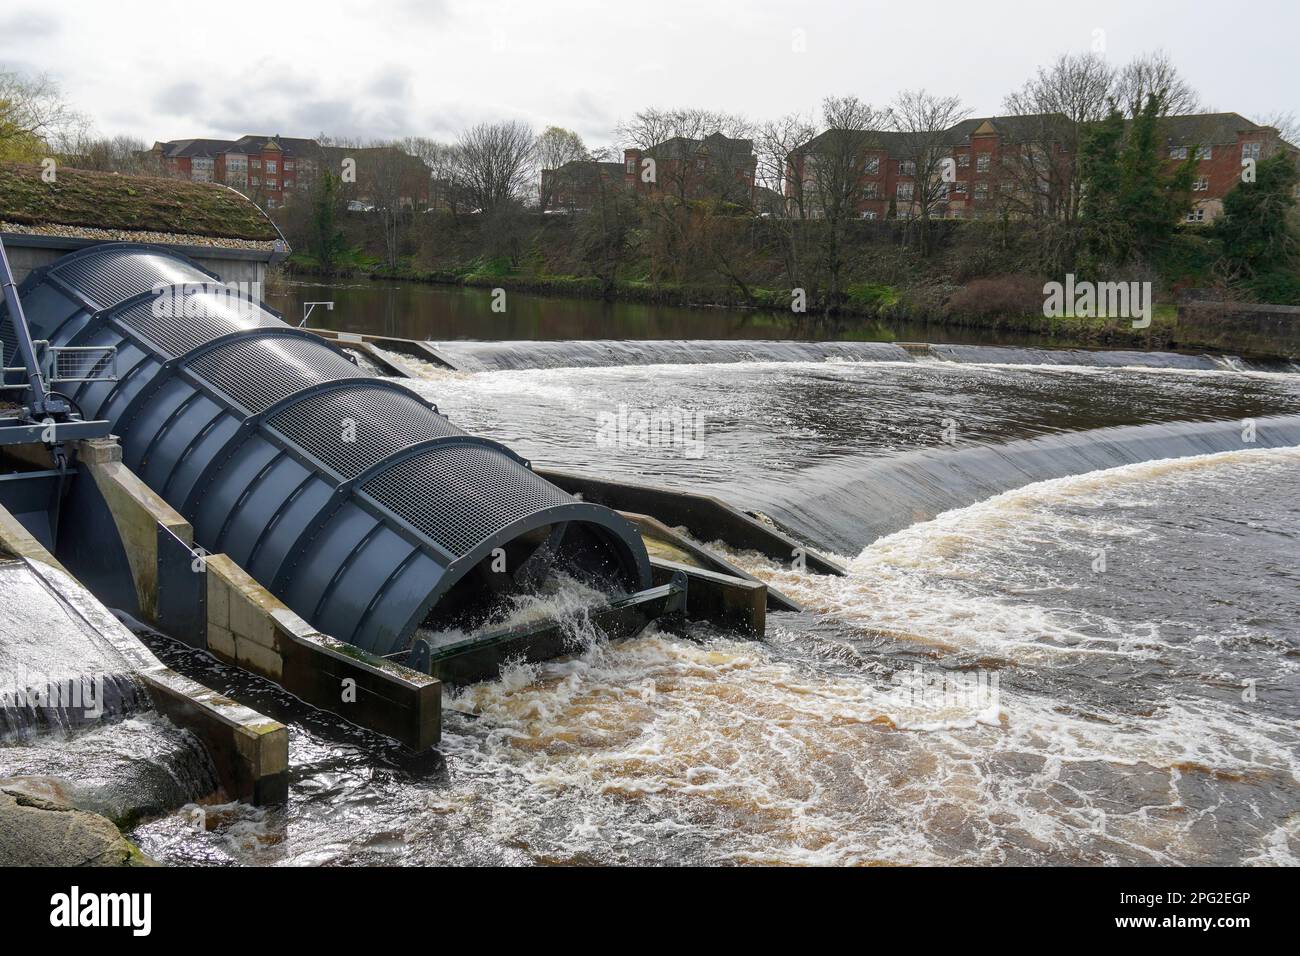 Projet hydroélectrique utilisant l'énergie hydraulique d'un barrage d'eau existant pour produire de l'électricité dans le réseau national,. Construit sur la rivière Ayr, Ayrshire, Banque D'Images